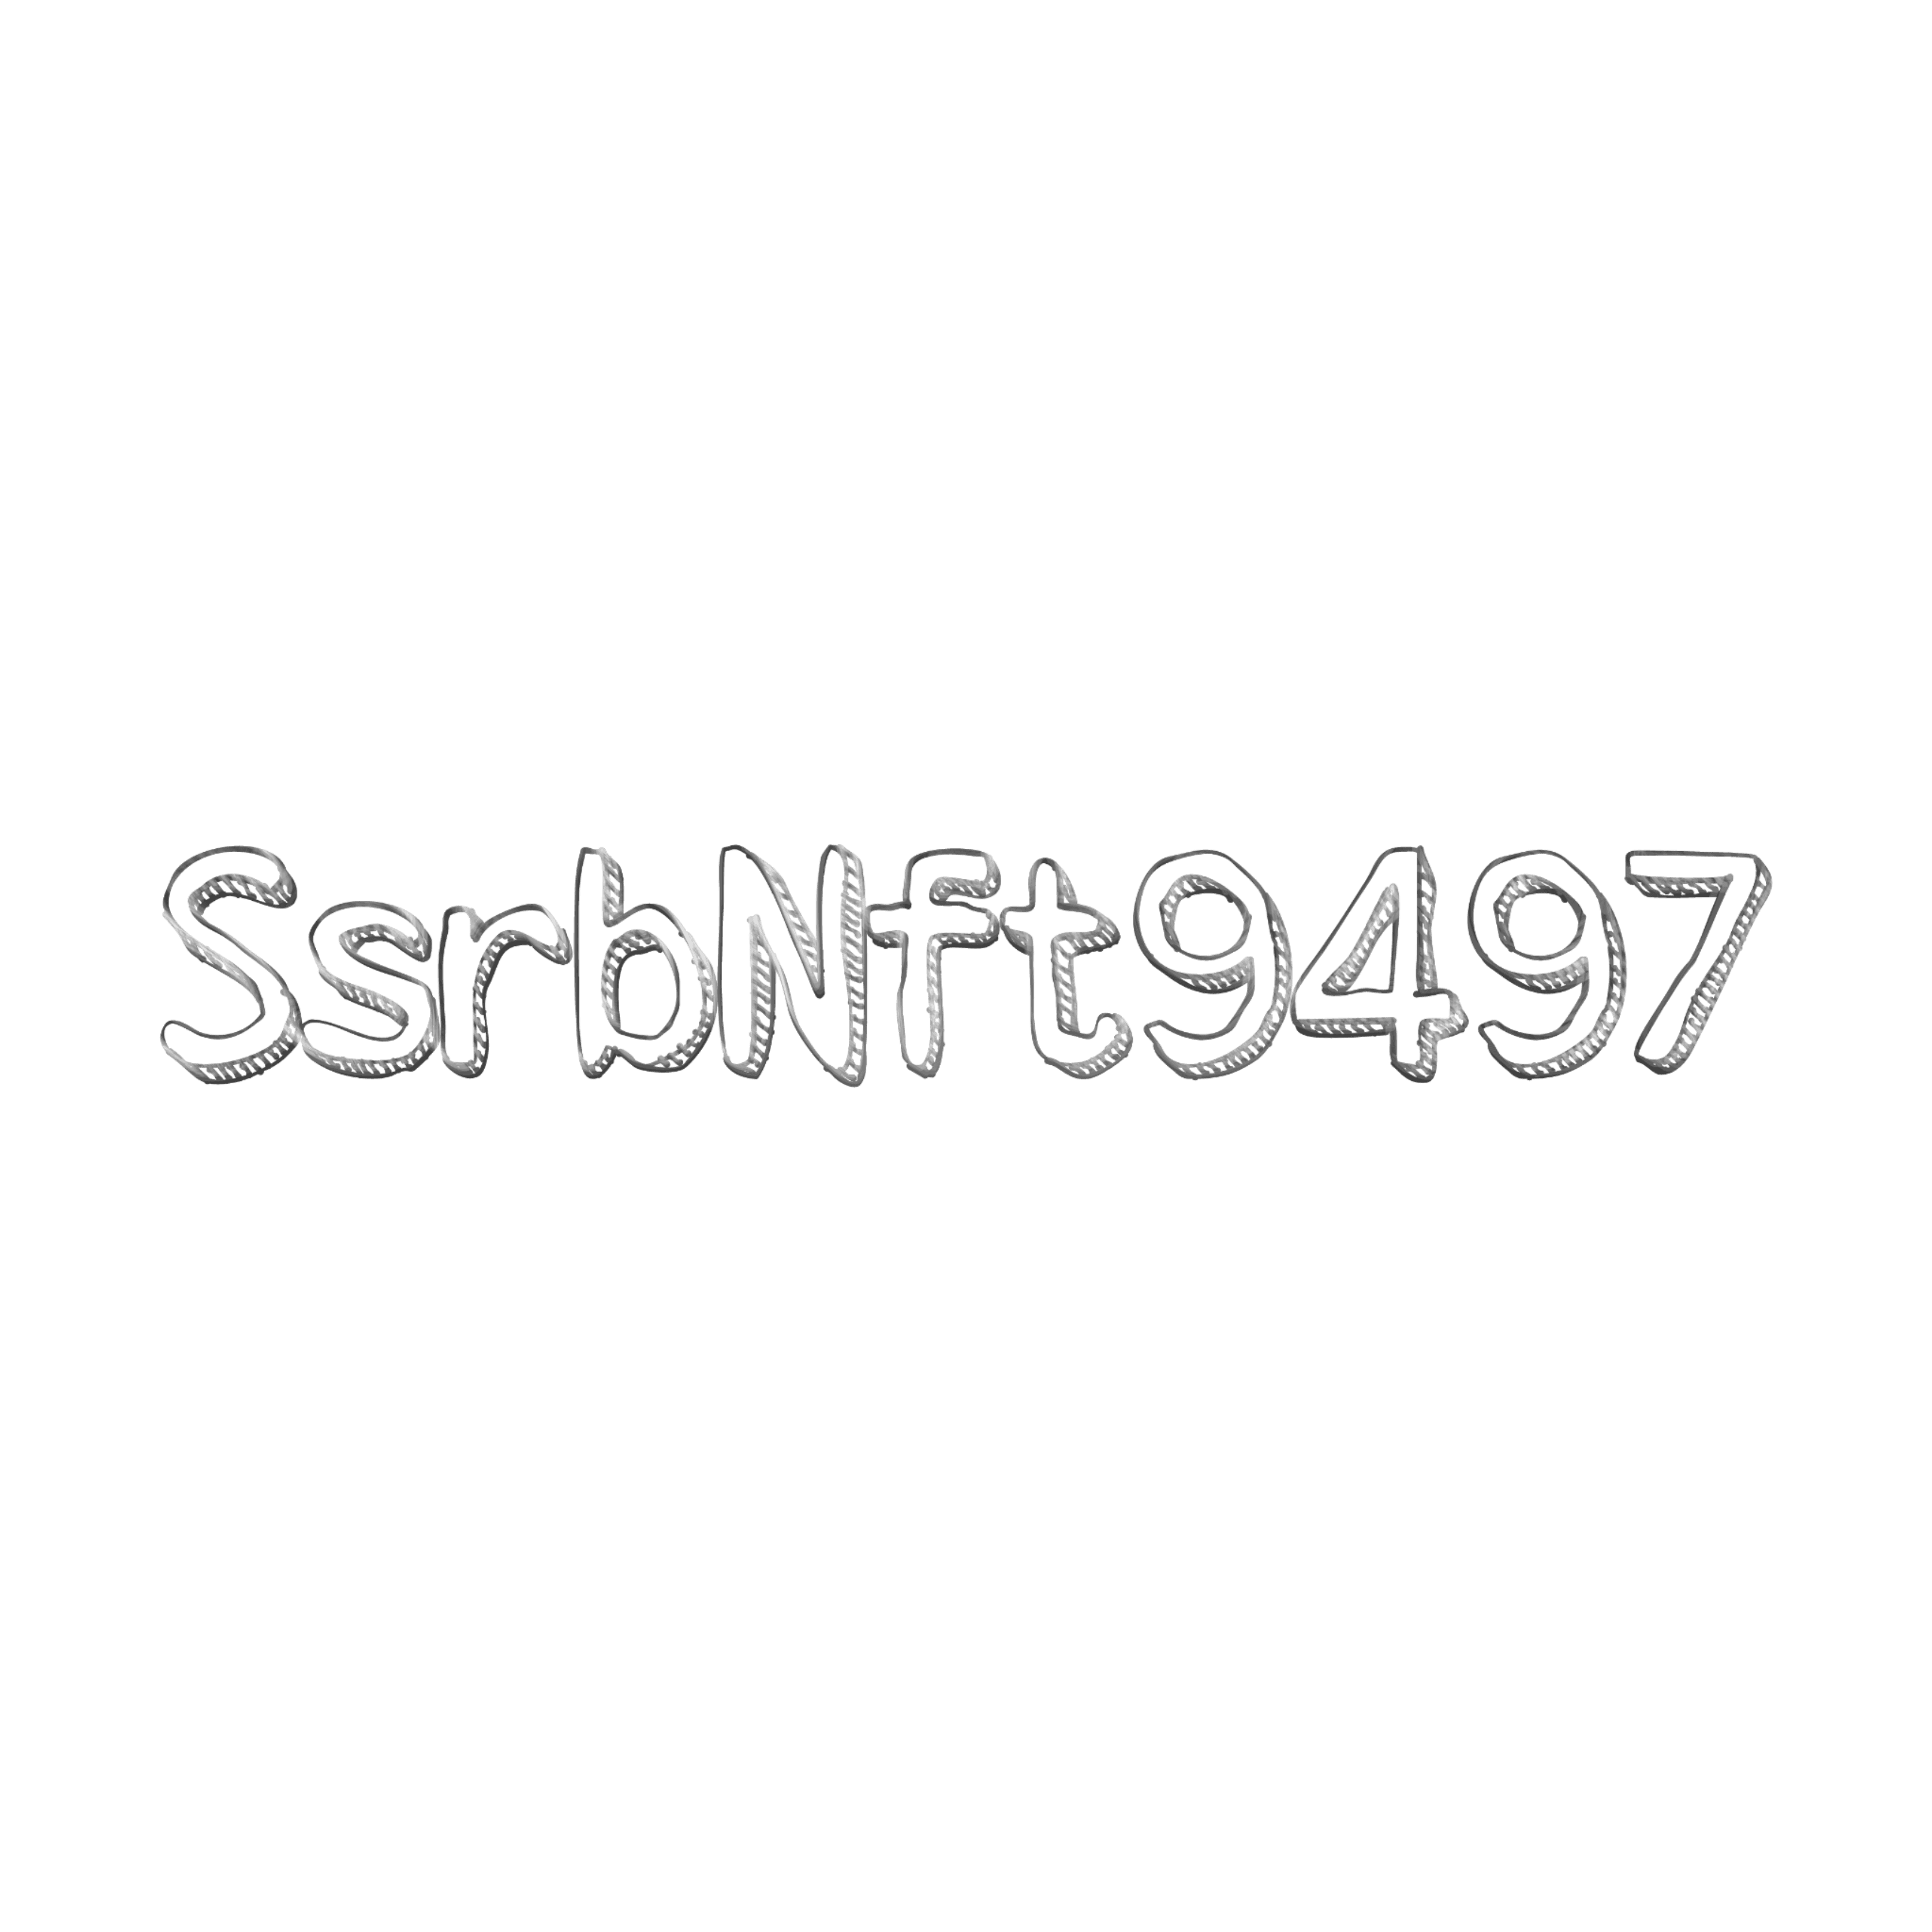 SsrbNft9497 banner